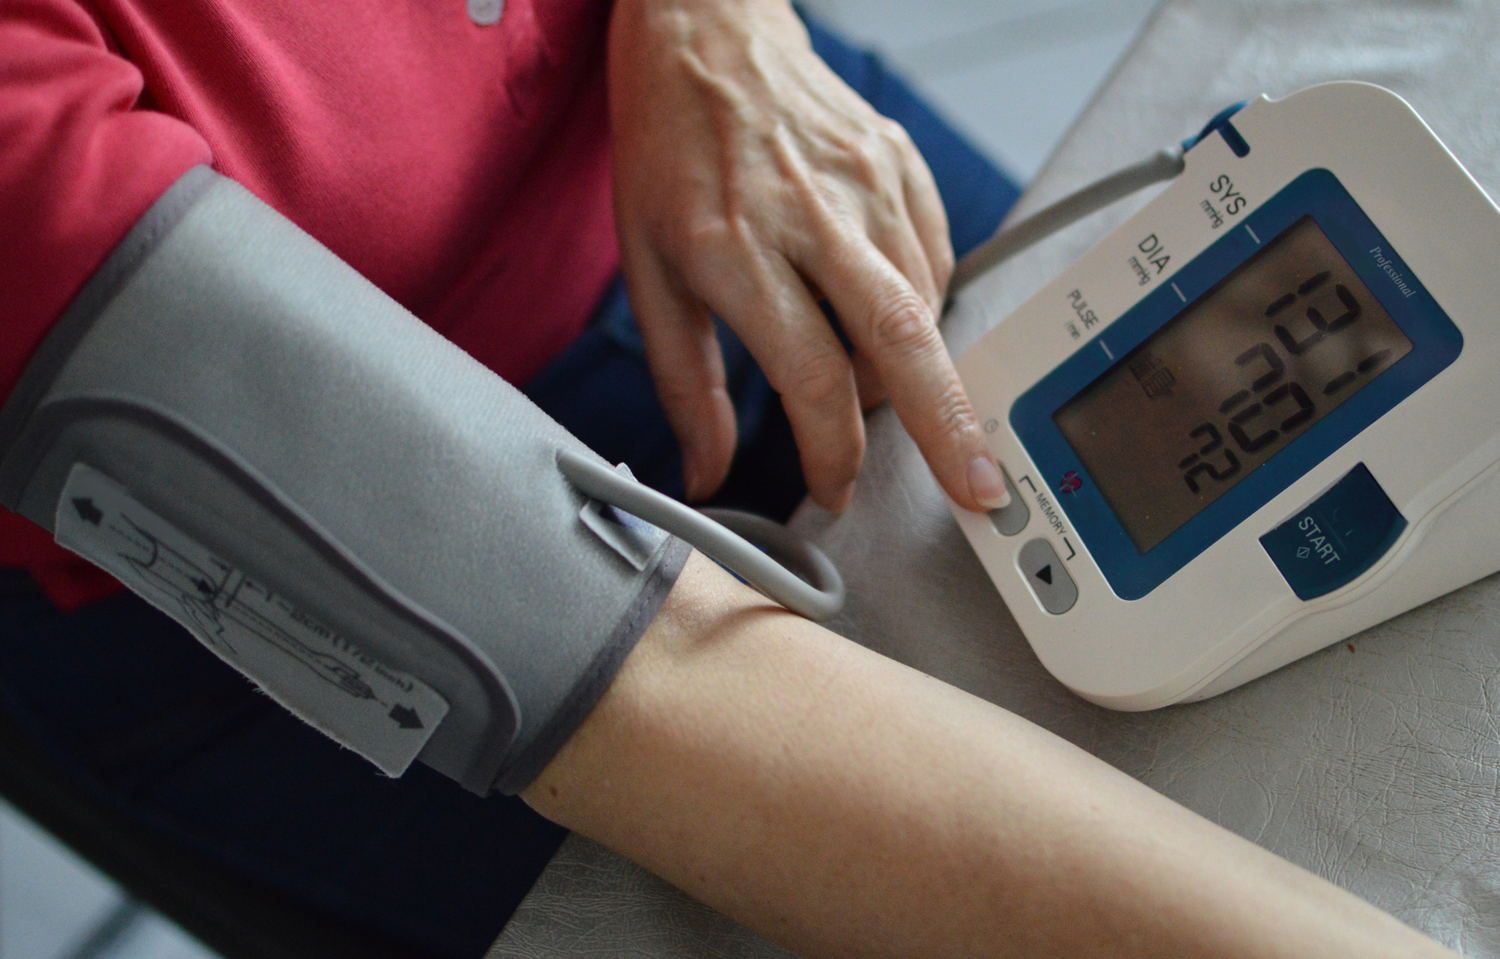 Blutdruck messen - Ein Messgerät im Einsatz